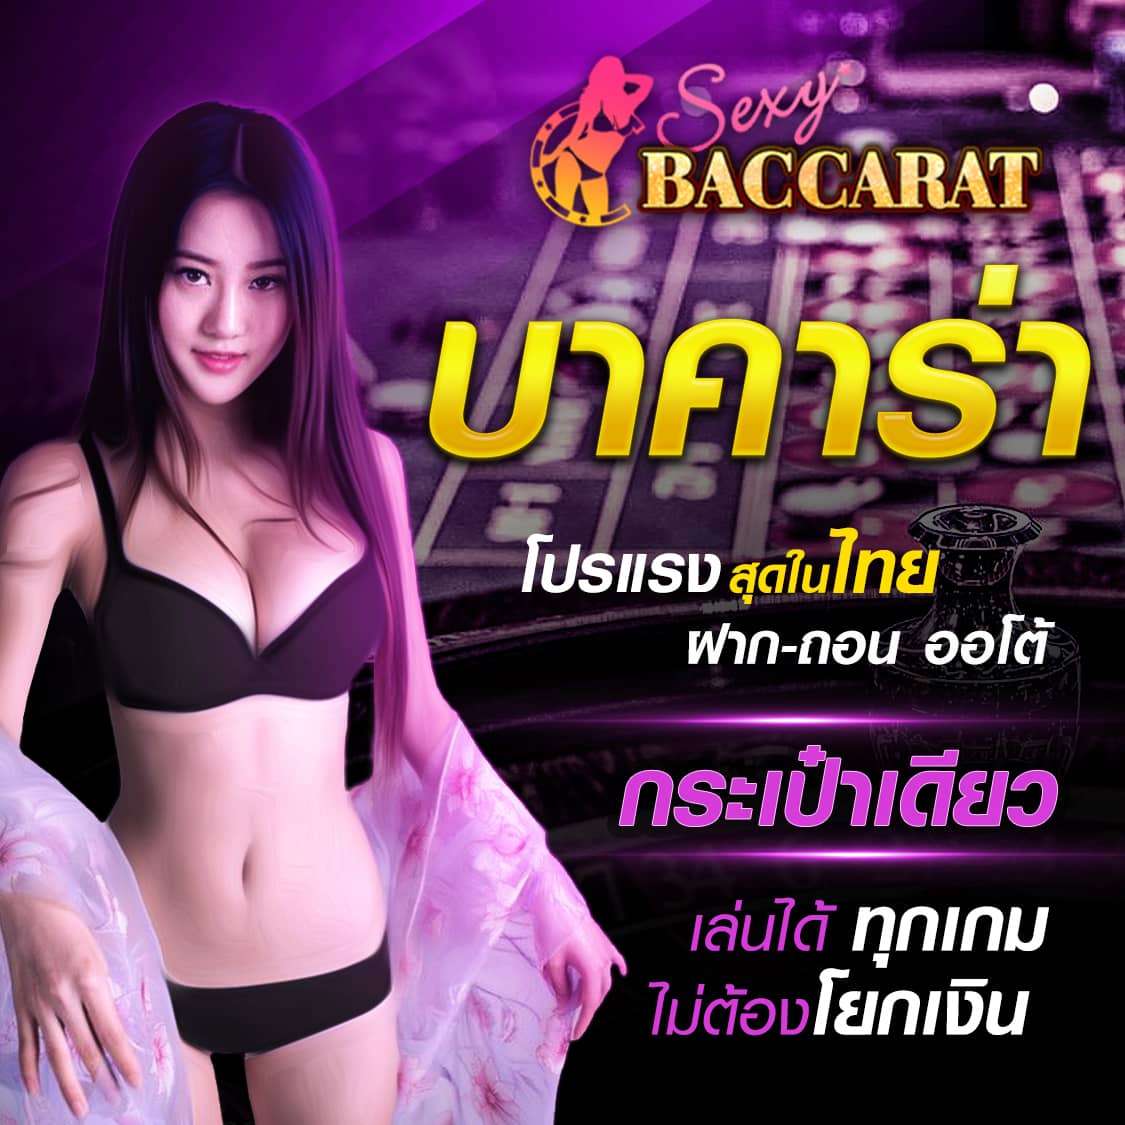 Sexy21 คาสิโนออนไลน์ เซ็กซี่บาคาร่า Sexy Baccarat